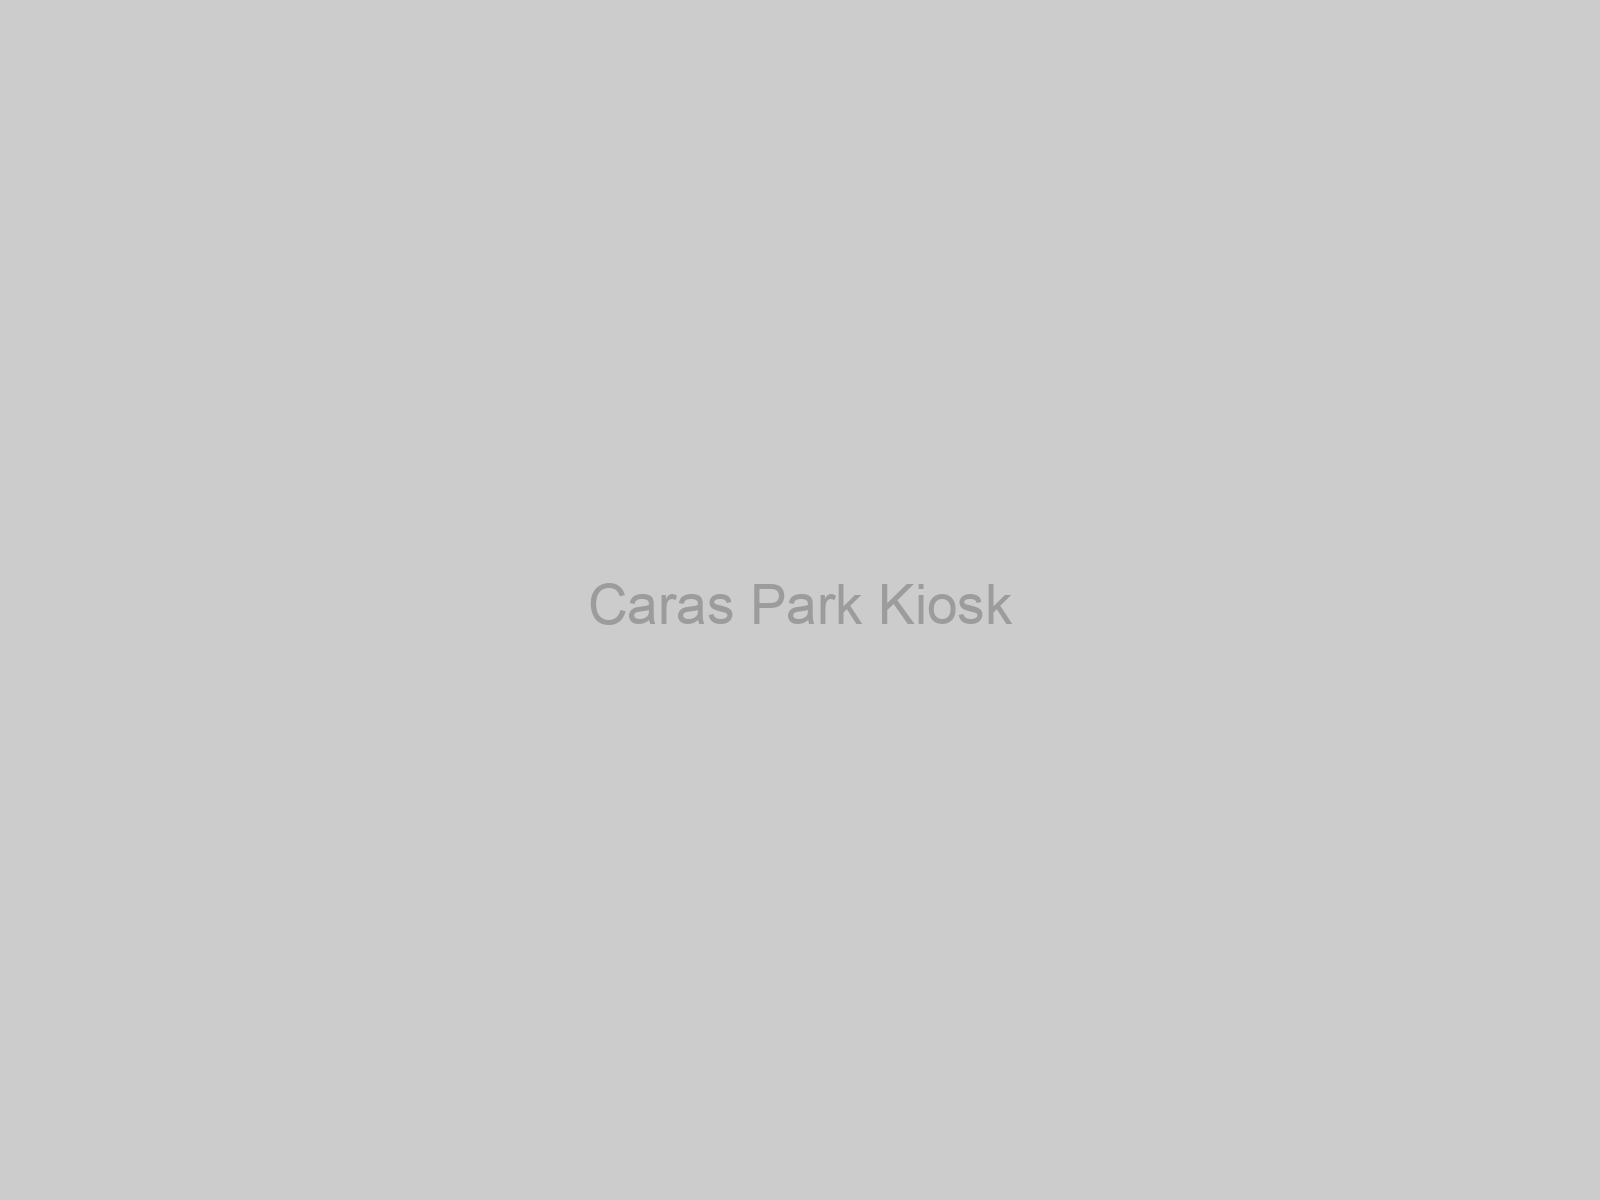 Caras Park Kiosk